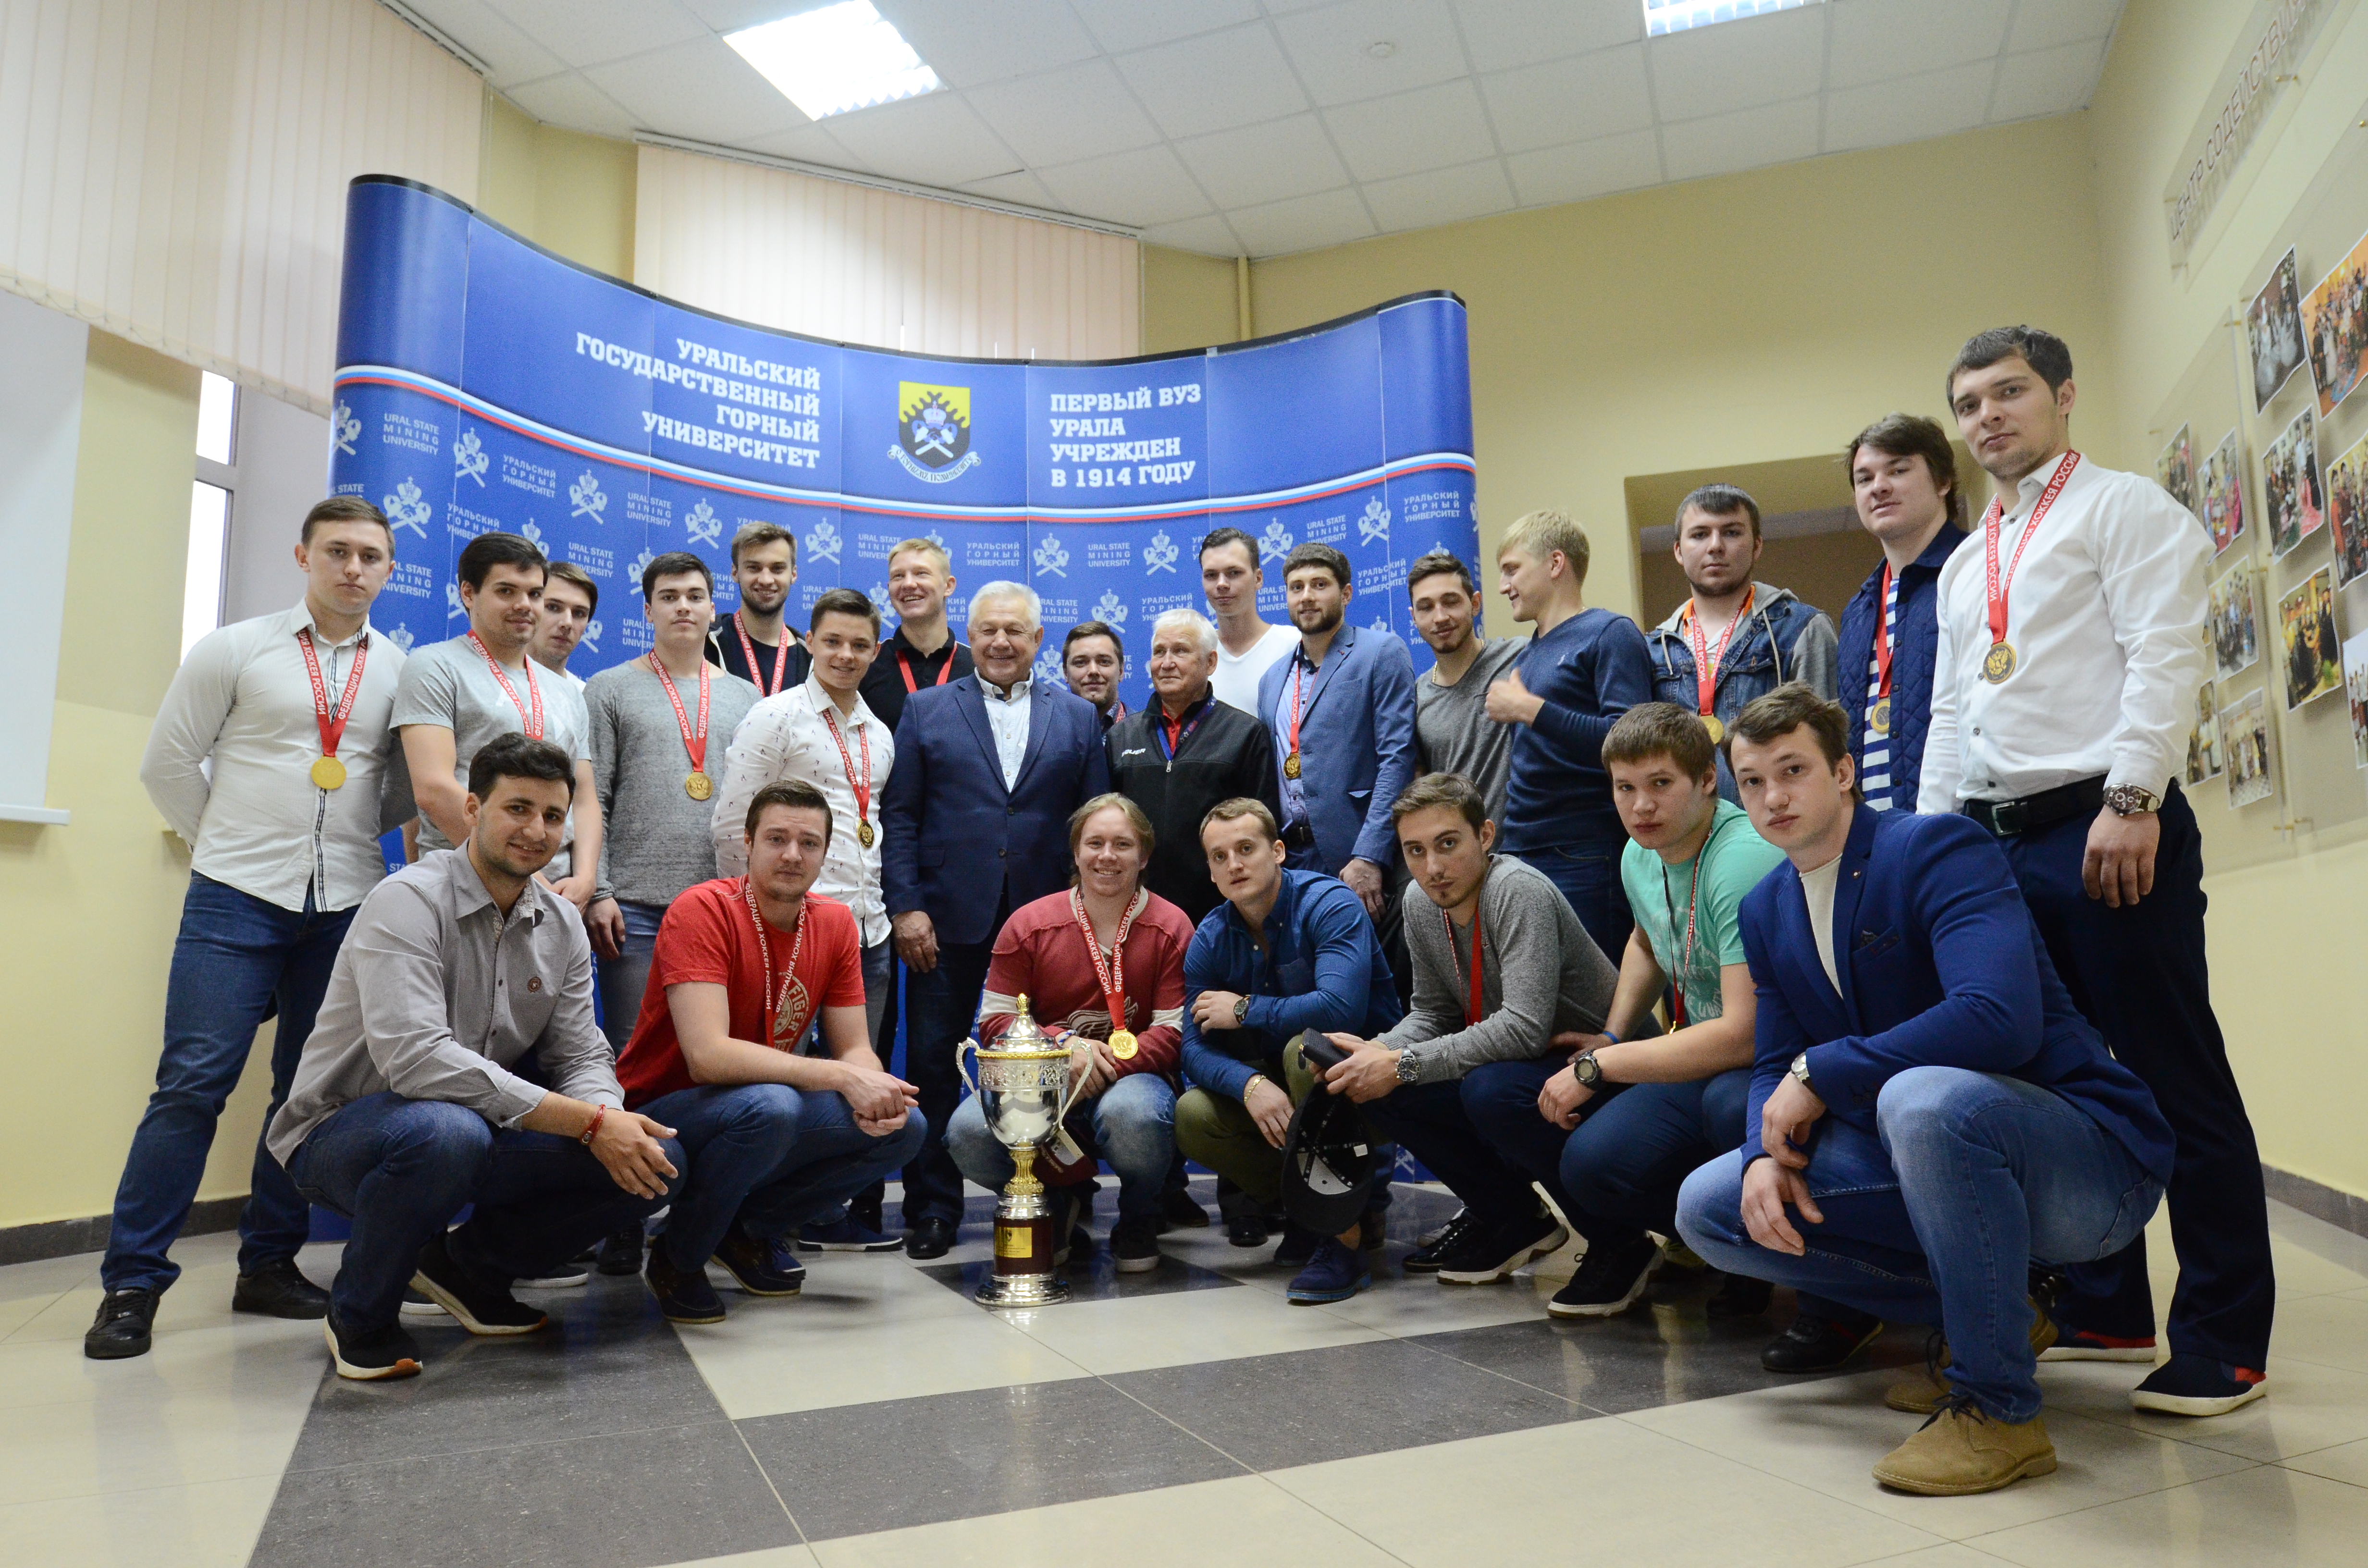 Кубок Чемпионата Студенческой хоккейной лиги прибыл в Горный университет